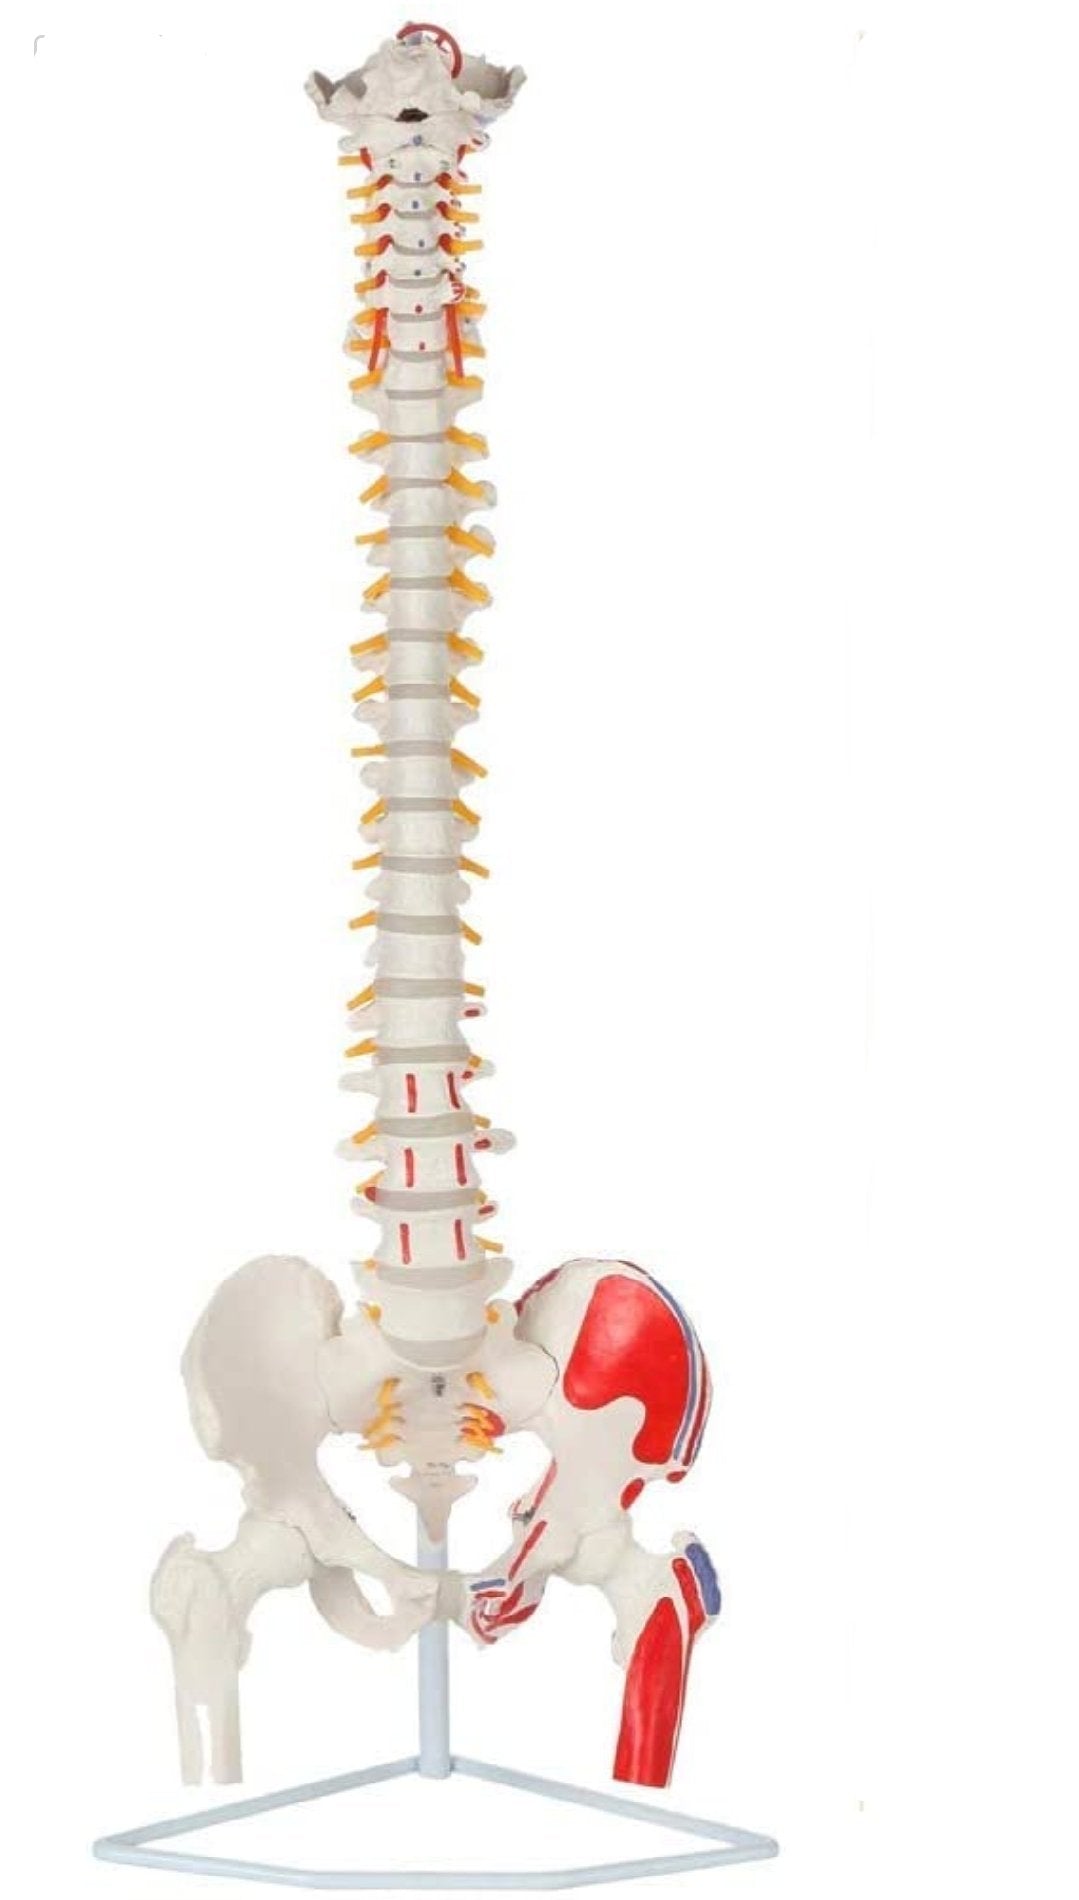 UIGJIOG Modelo De Columna Vertebral Completa Premium Modelo Anatómico  Columna Vertebral Humana Modelo De Médula Espinal 34 con Vértebras Nervios